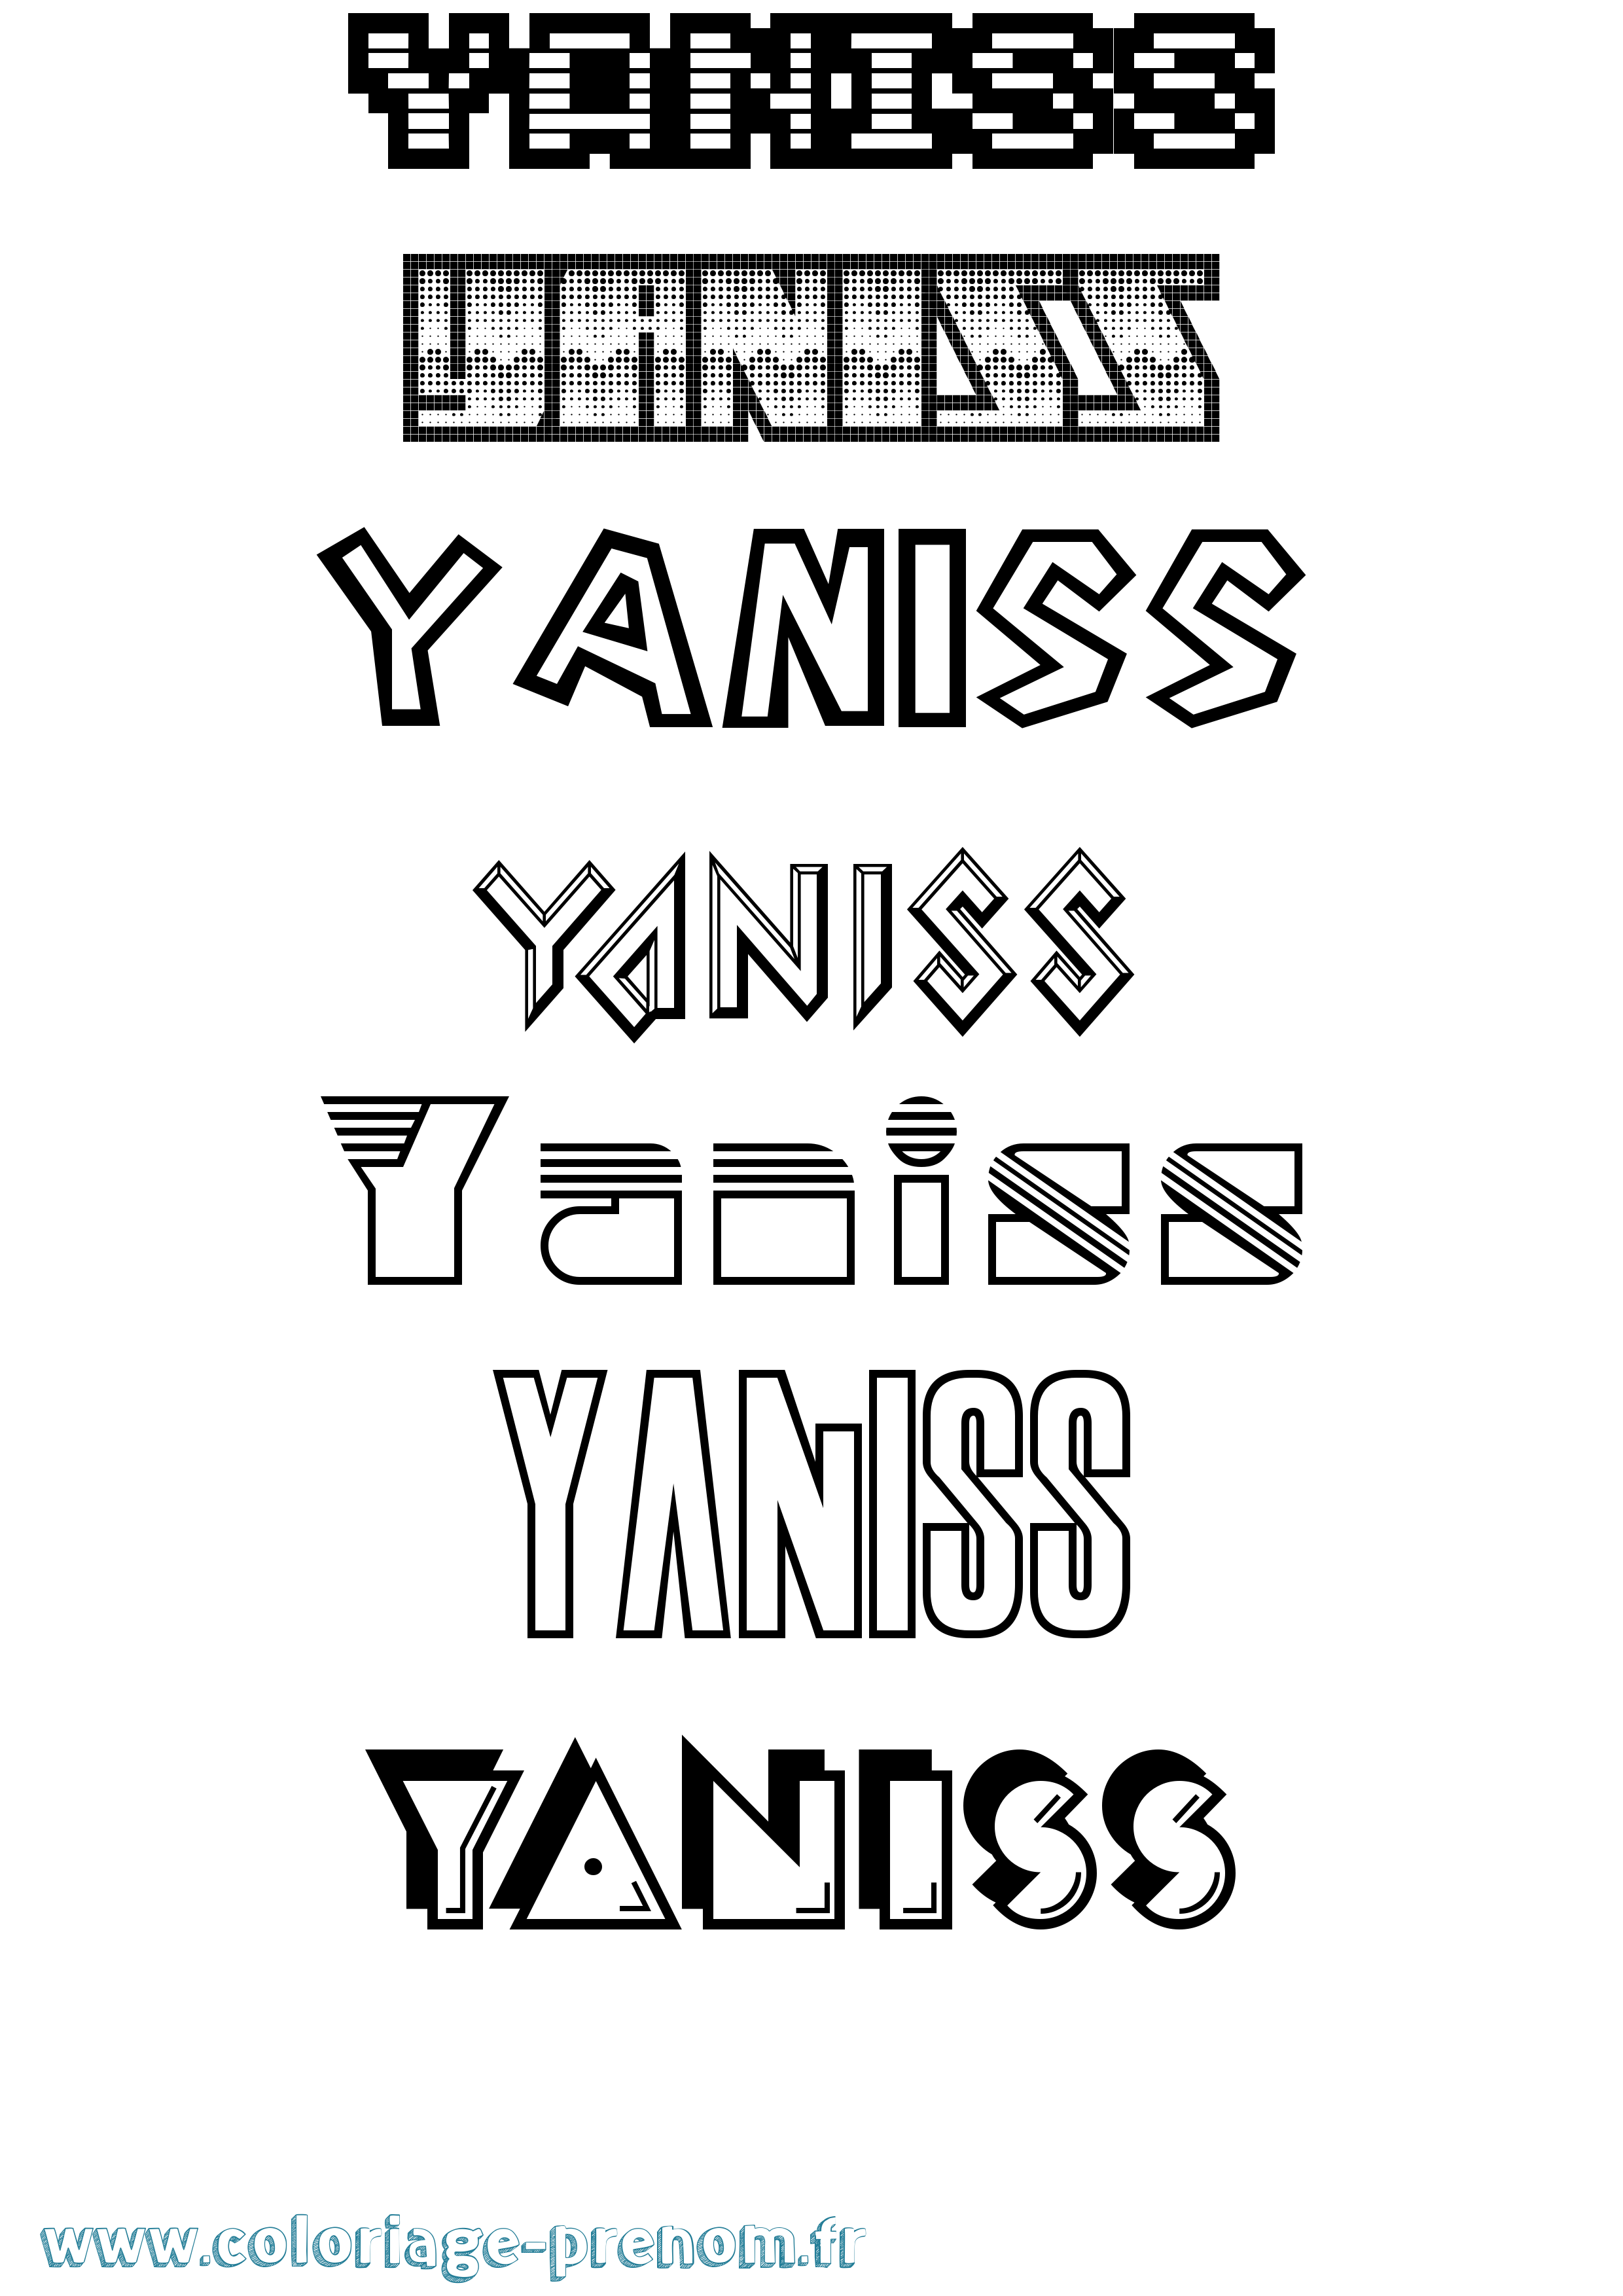 Coloriage prénom Yaniss Jeux Vidéos